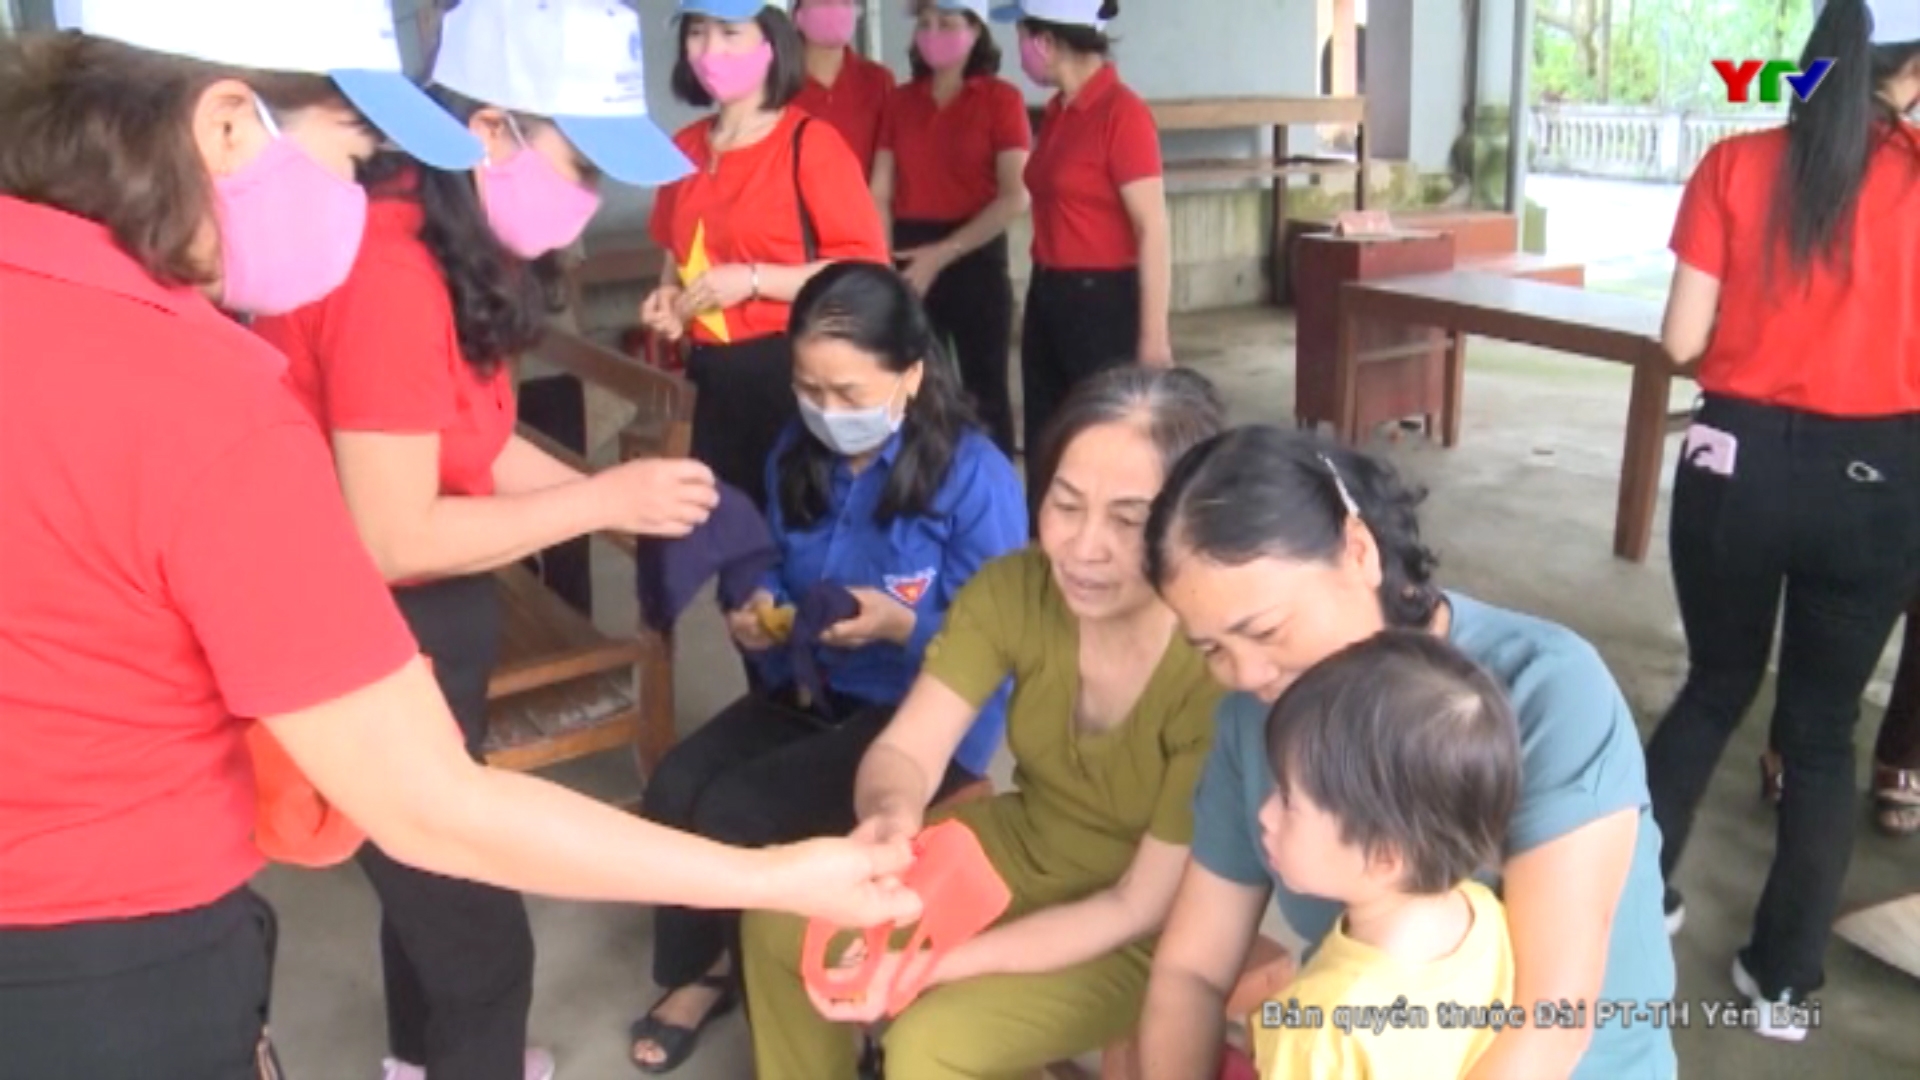 CLB Khiêu vũ thể thao thị trấn Mậu A ( huyện Văn Yên) may hàng ngàn chiếc khẩu trang vải, phát miễn phí cho người dân